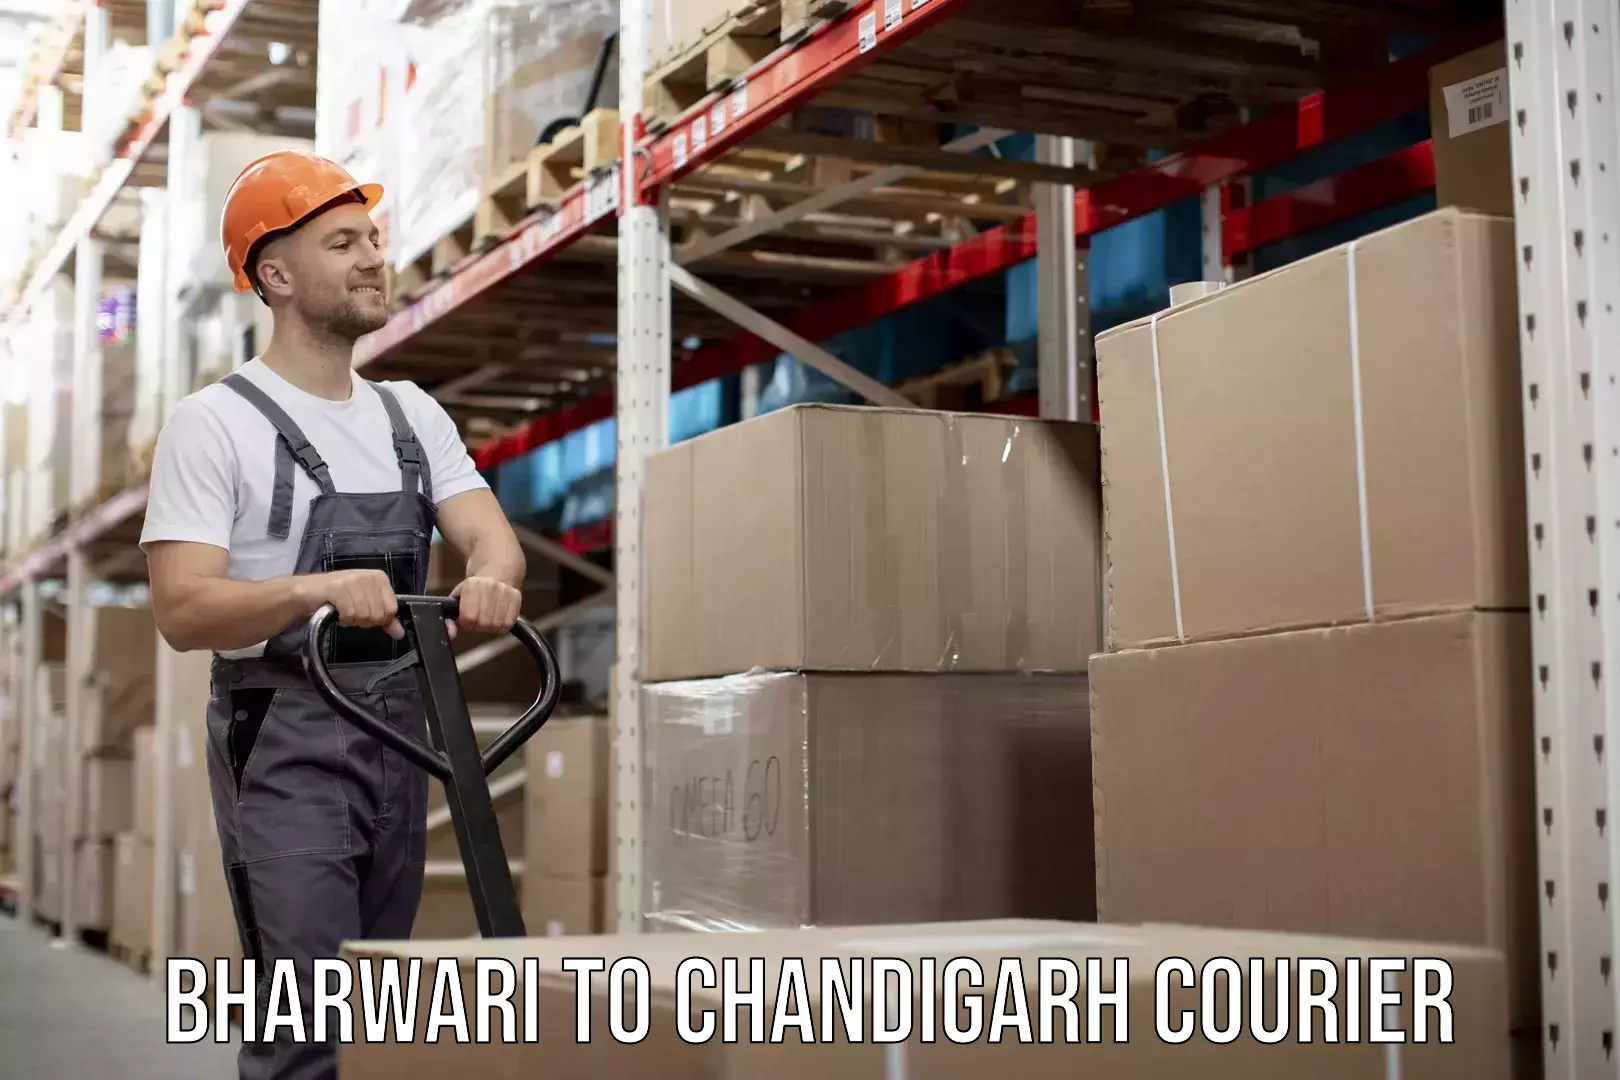 International courier networks Bharwari to Chandigarh